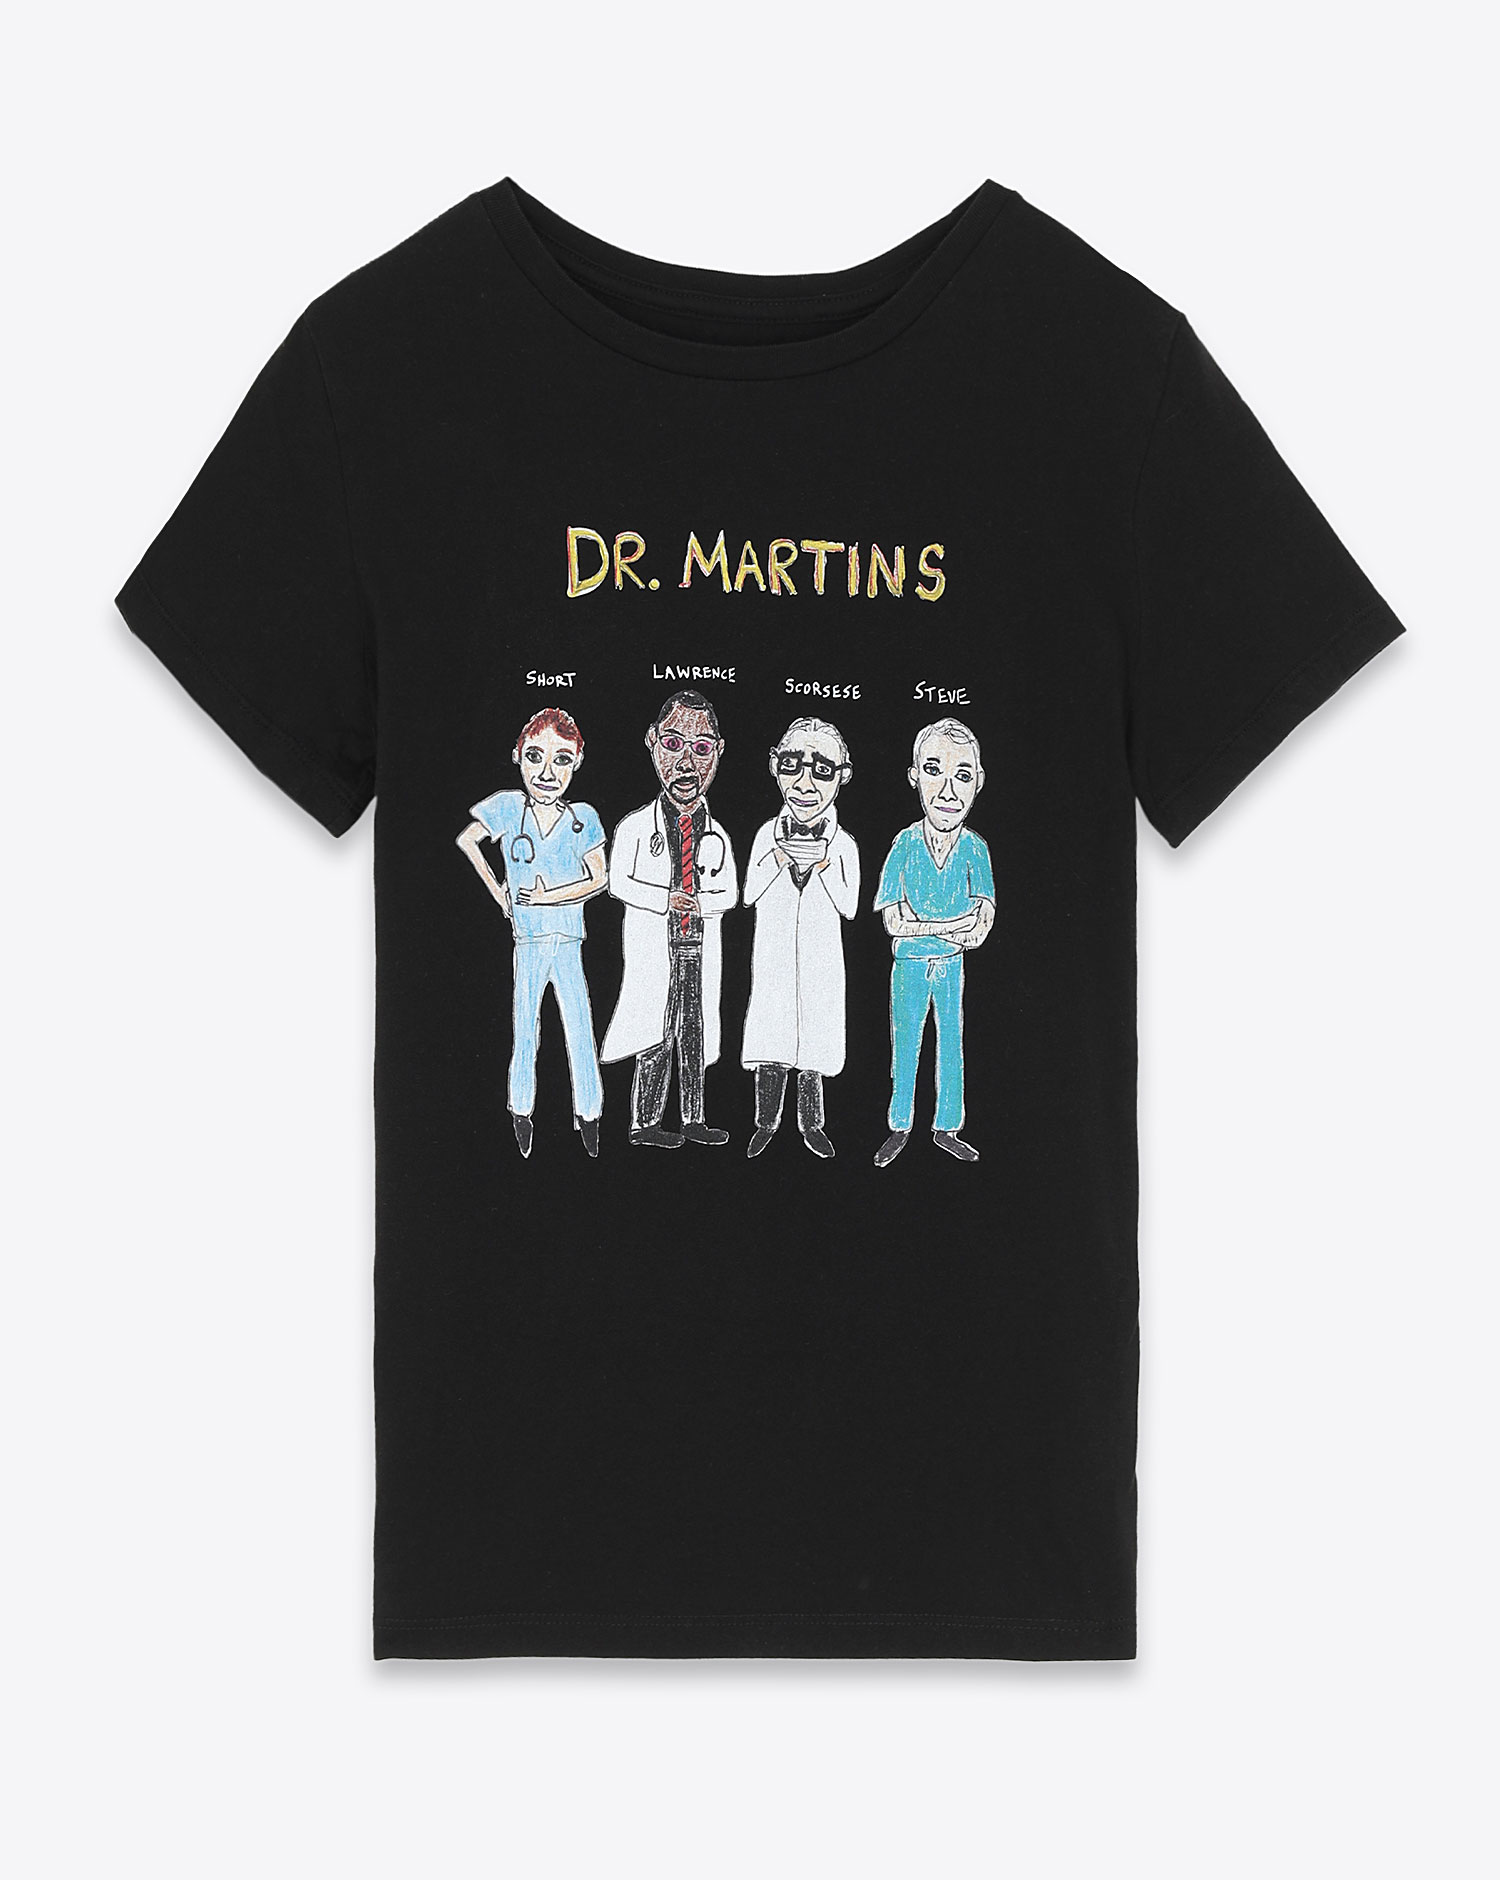 
Tee-shirt Unfortunate Portrait Dr. Martins 